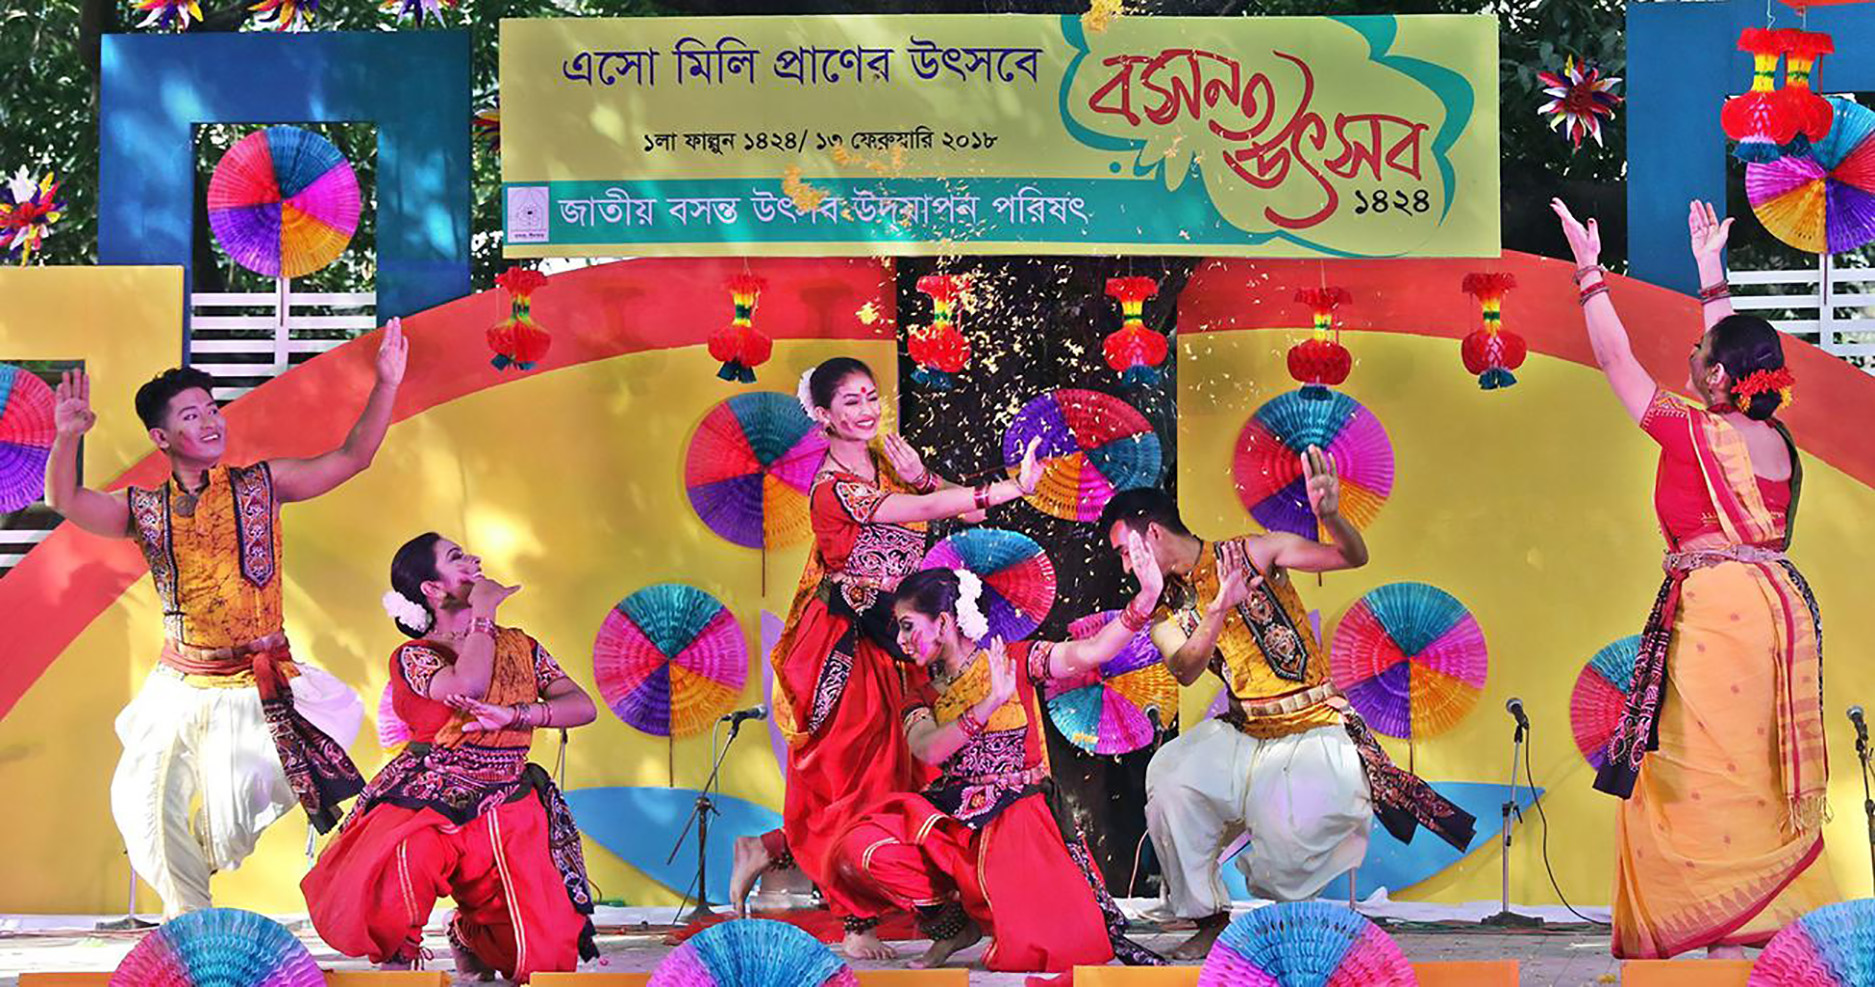 Pahela Falgun brings colour in life